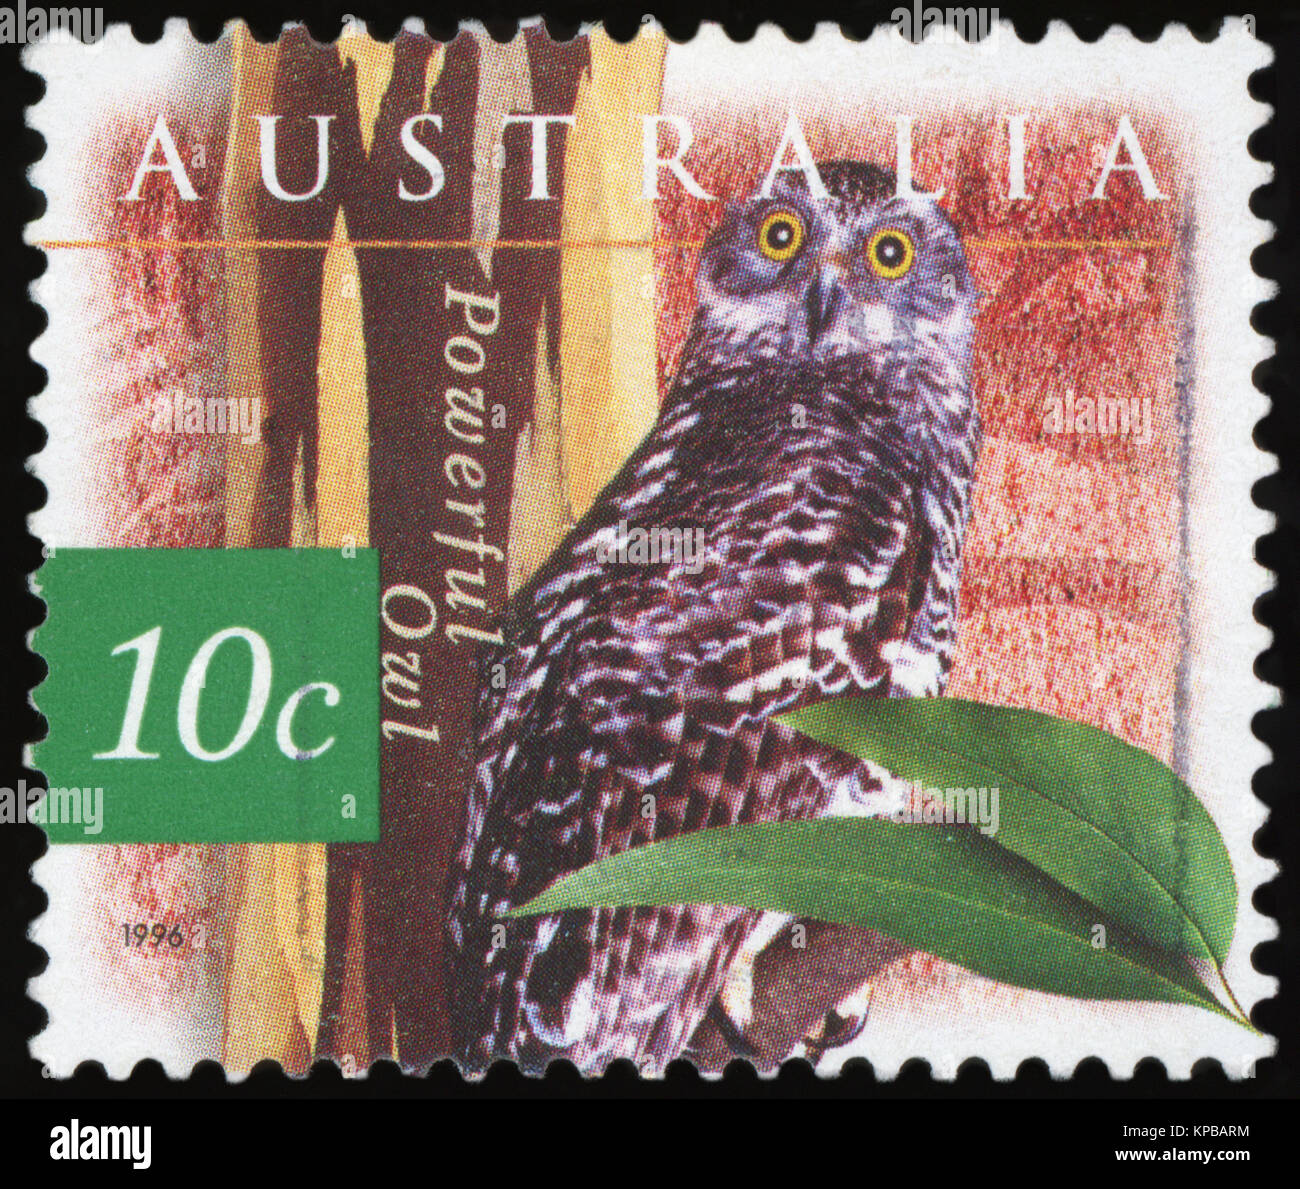 L'AUSTRALIE - circa 1996:un timbre-poste d'Australie illustrant Owl, puissant publié en 1996. Banque D'Images